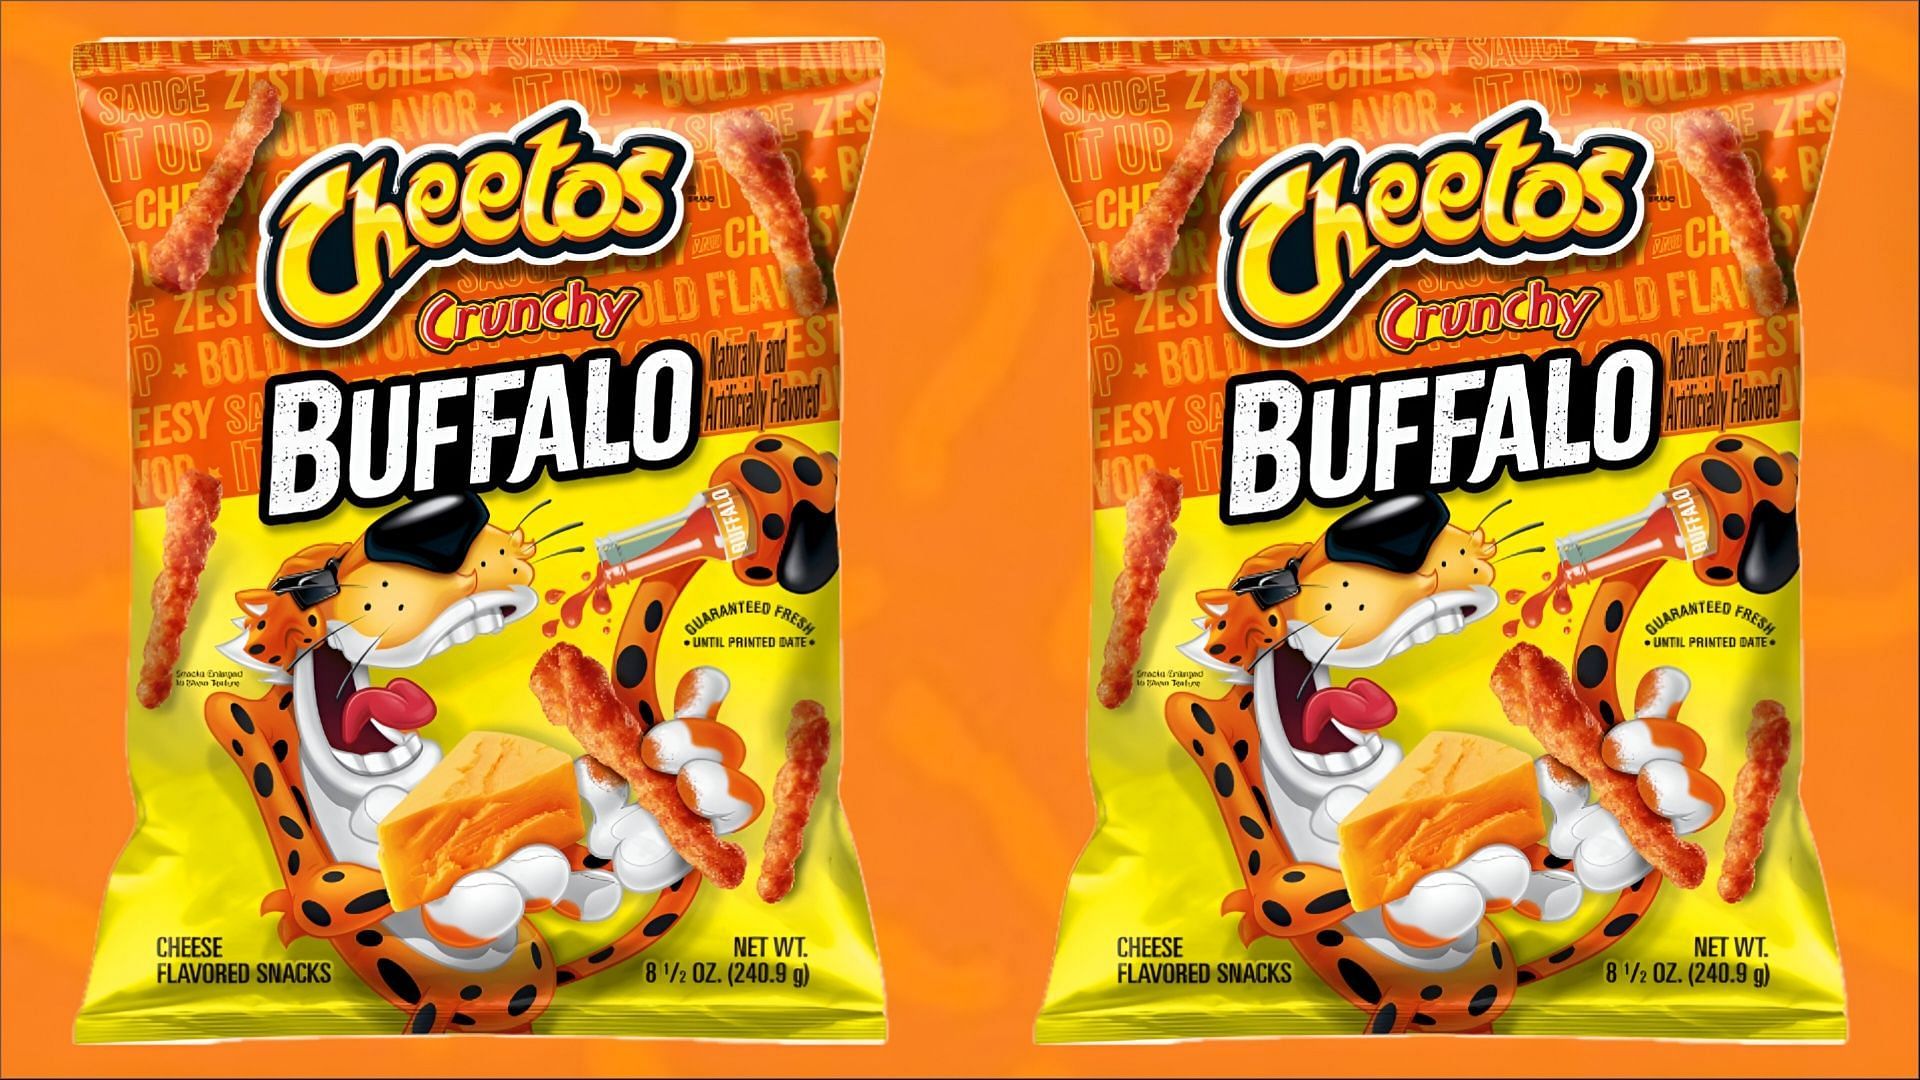 Cheetos introduces new Crunchy Buffalo flavor (Image via Cheetos)